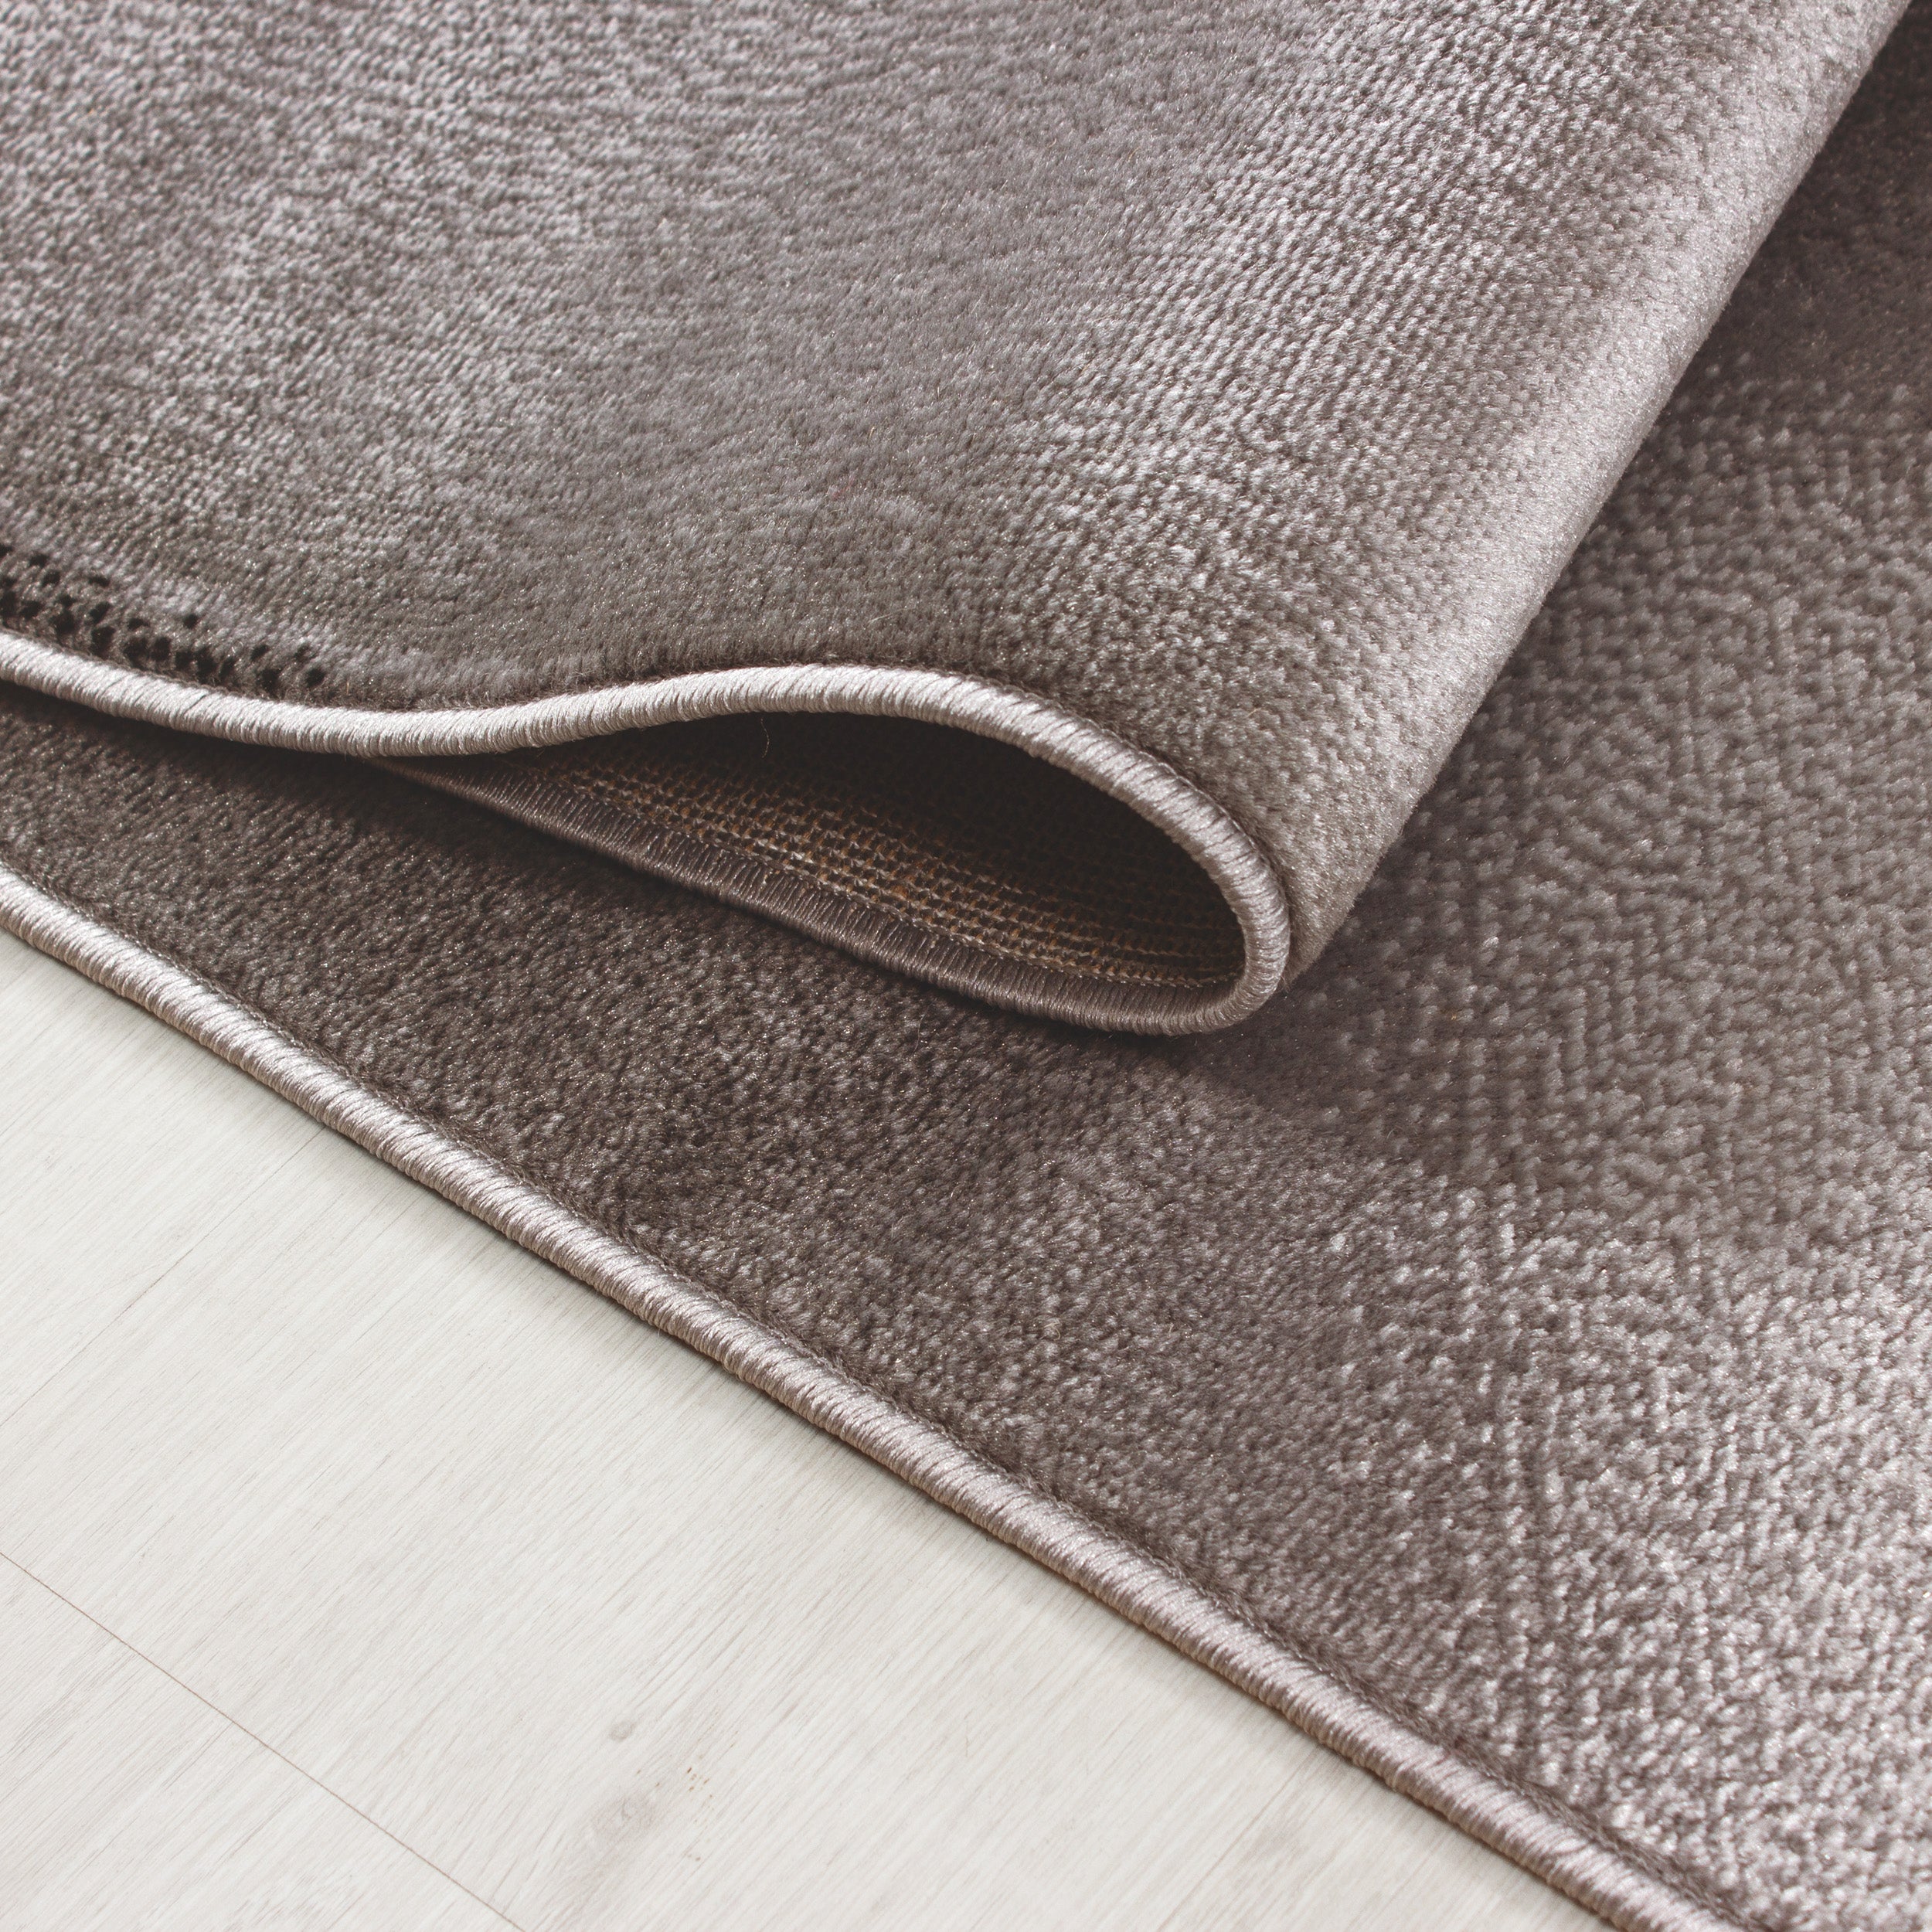 Kurzflor Teppich Design Schatten Muster Wohnzimmerteppich Braun Beige Meliert